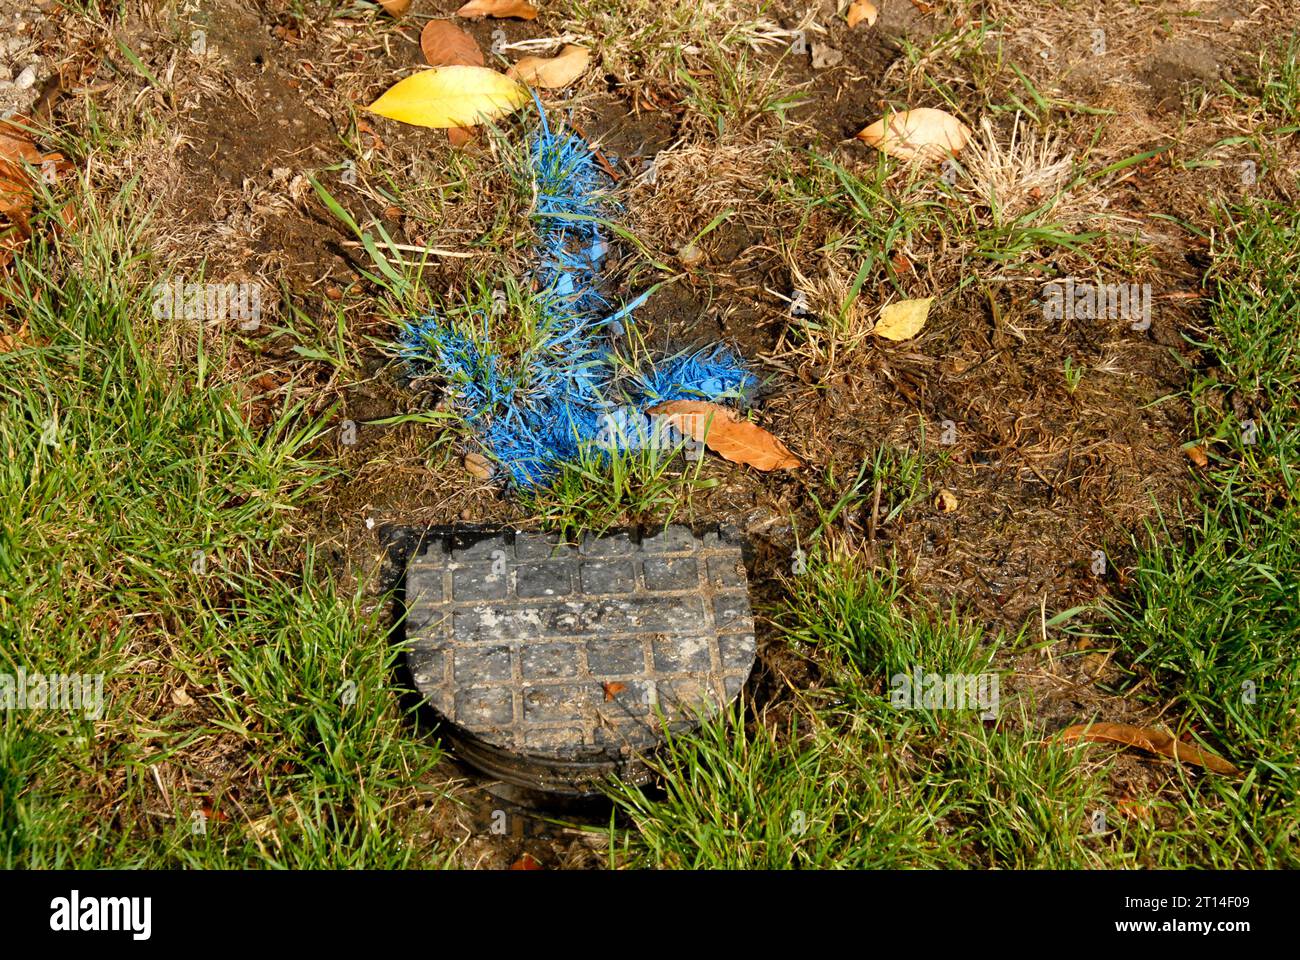 Freccia blu in grassetto sull'erba che indica perdite dal misuratore dell'acqua che deve essere sostituito, dopo il controllo e prima dell'inizio delle riparazioni Foto Stock